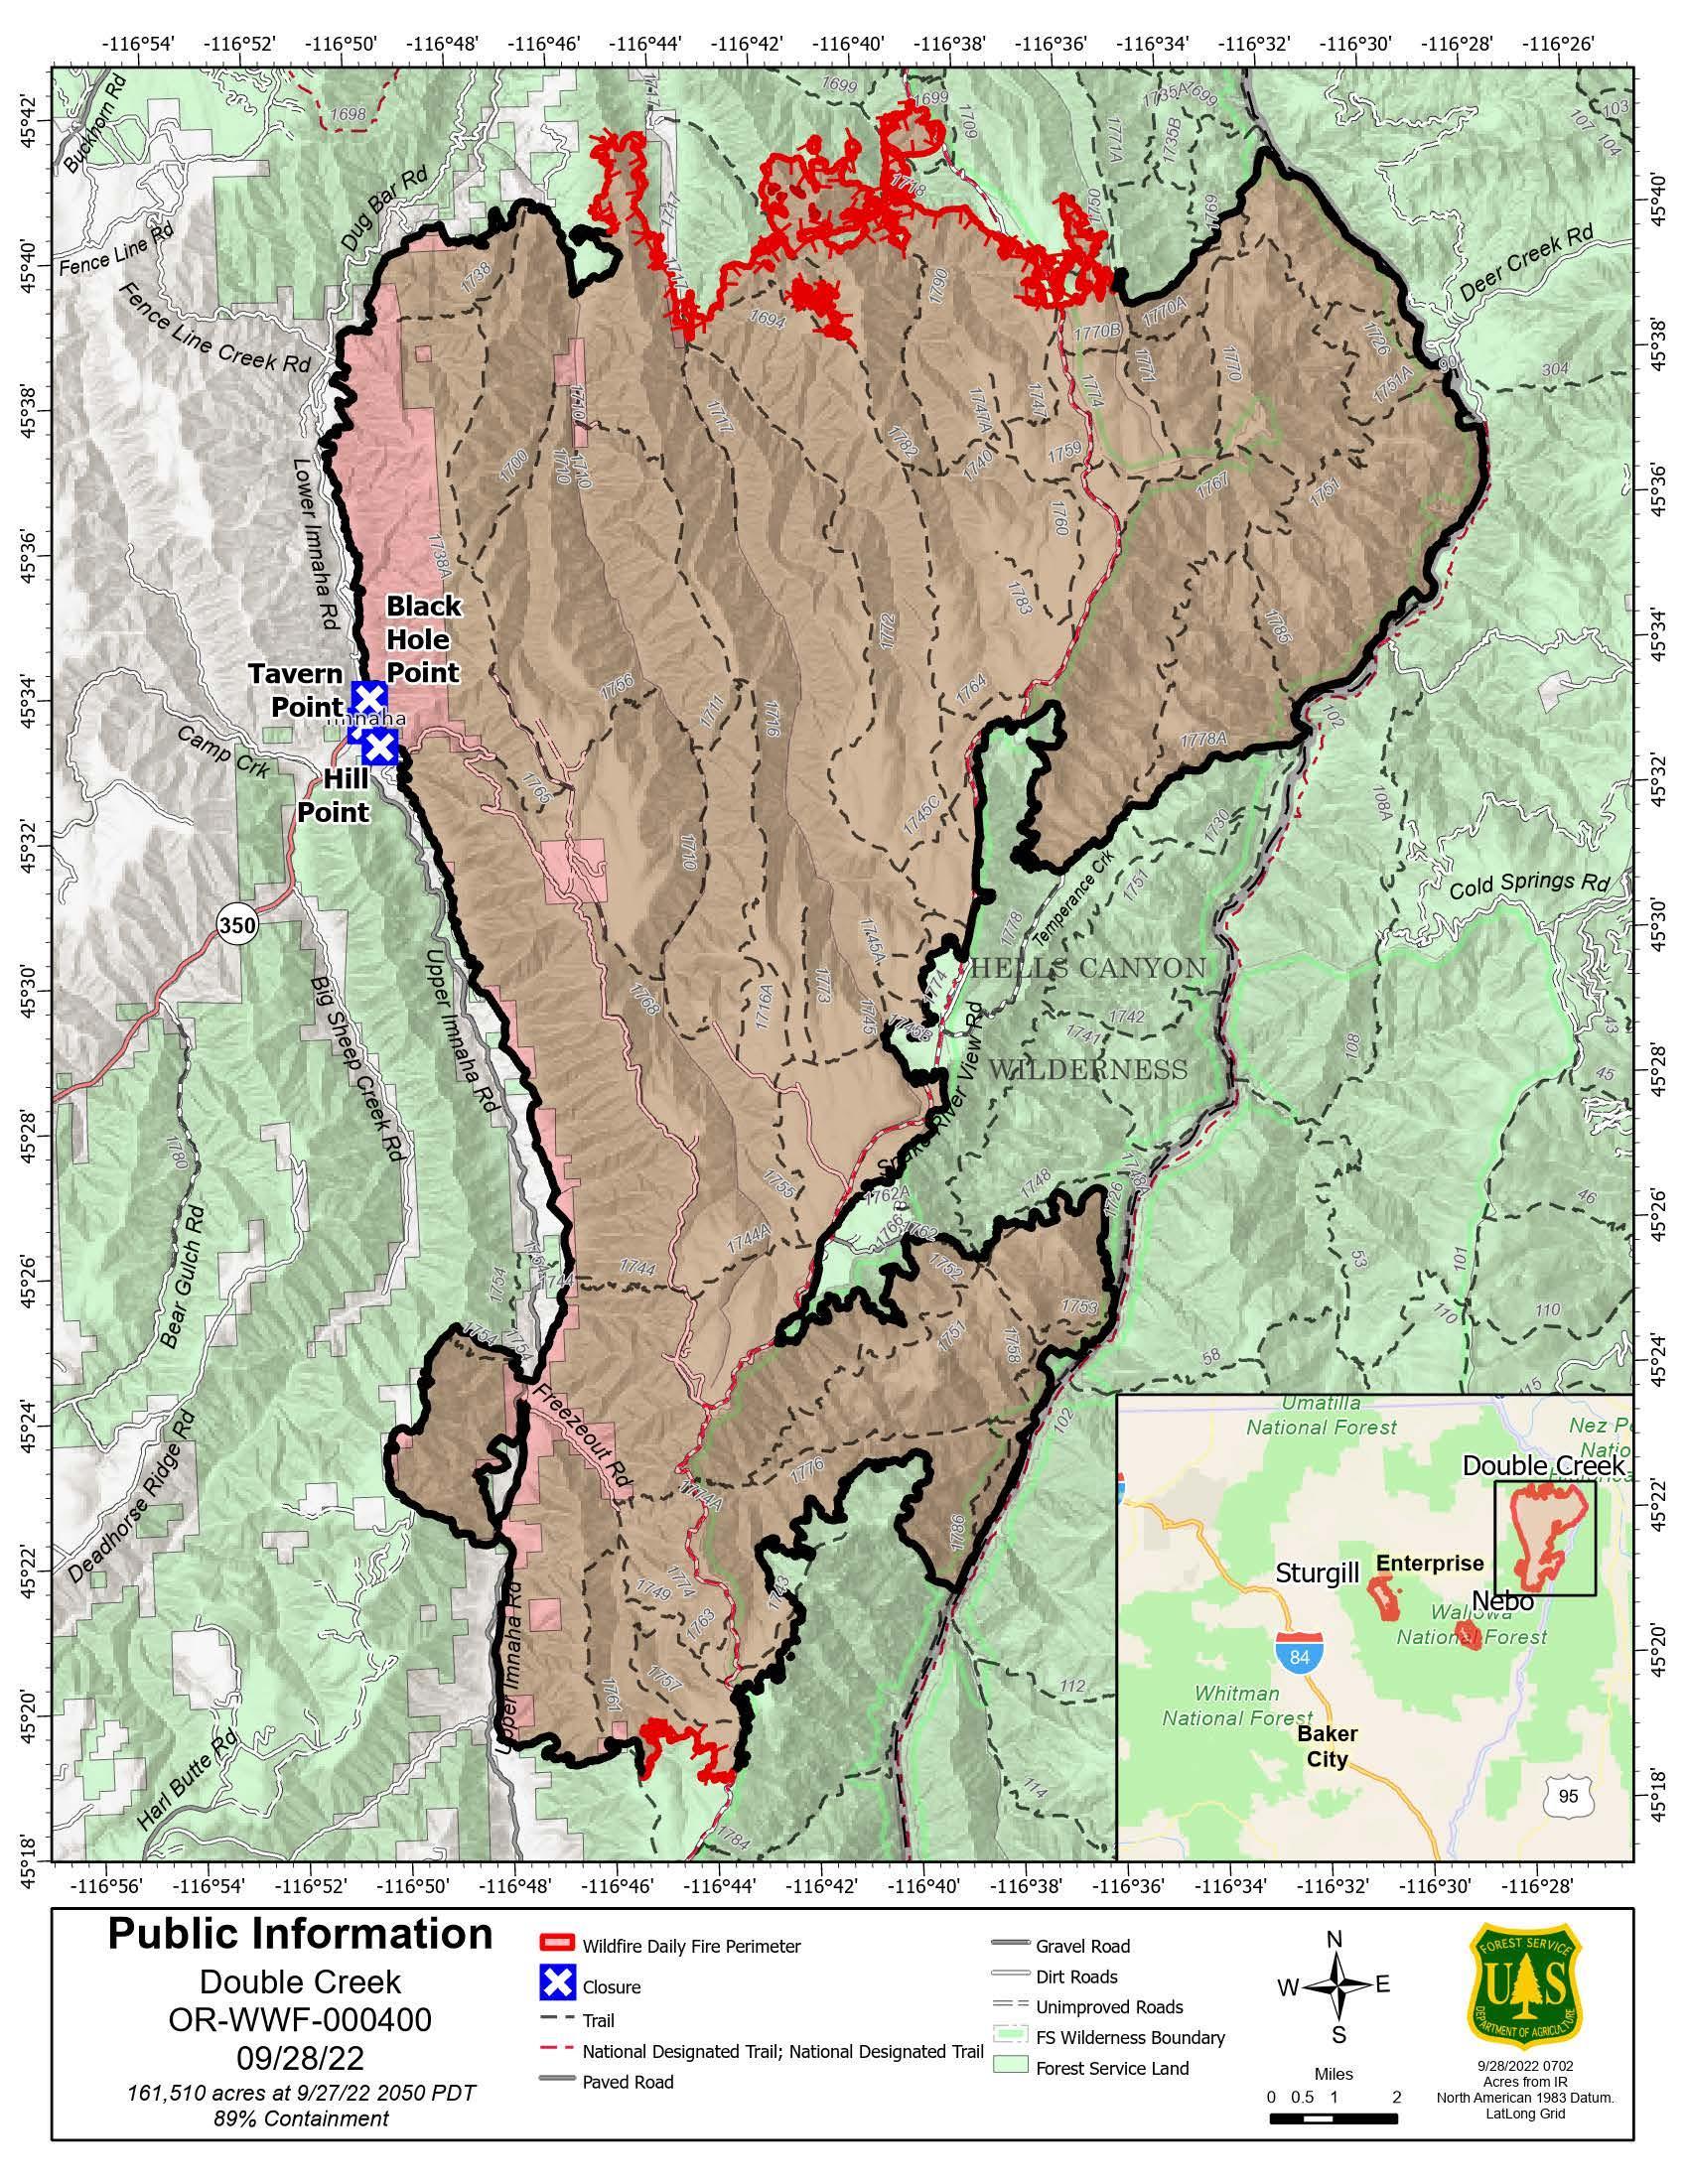 Double Creek Fire Map - 09/28/2022